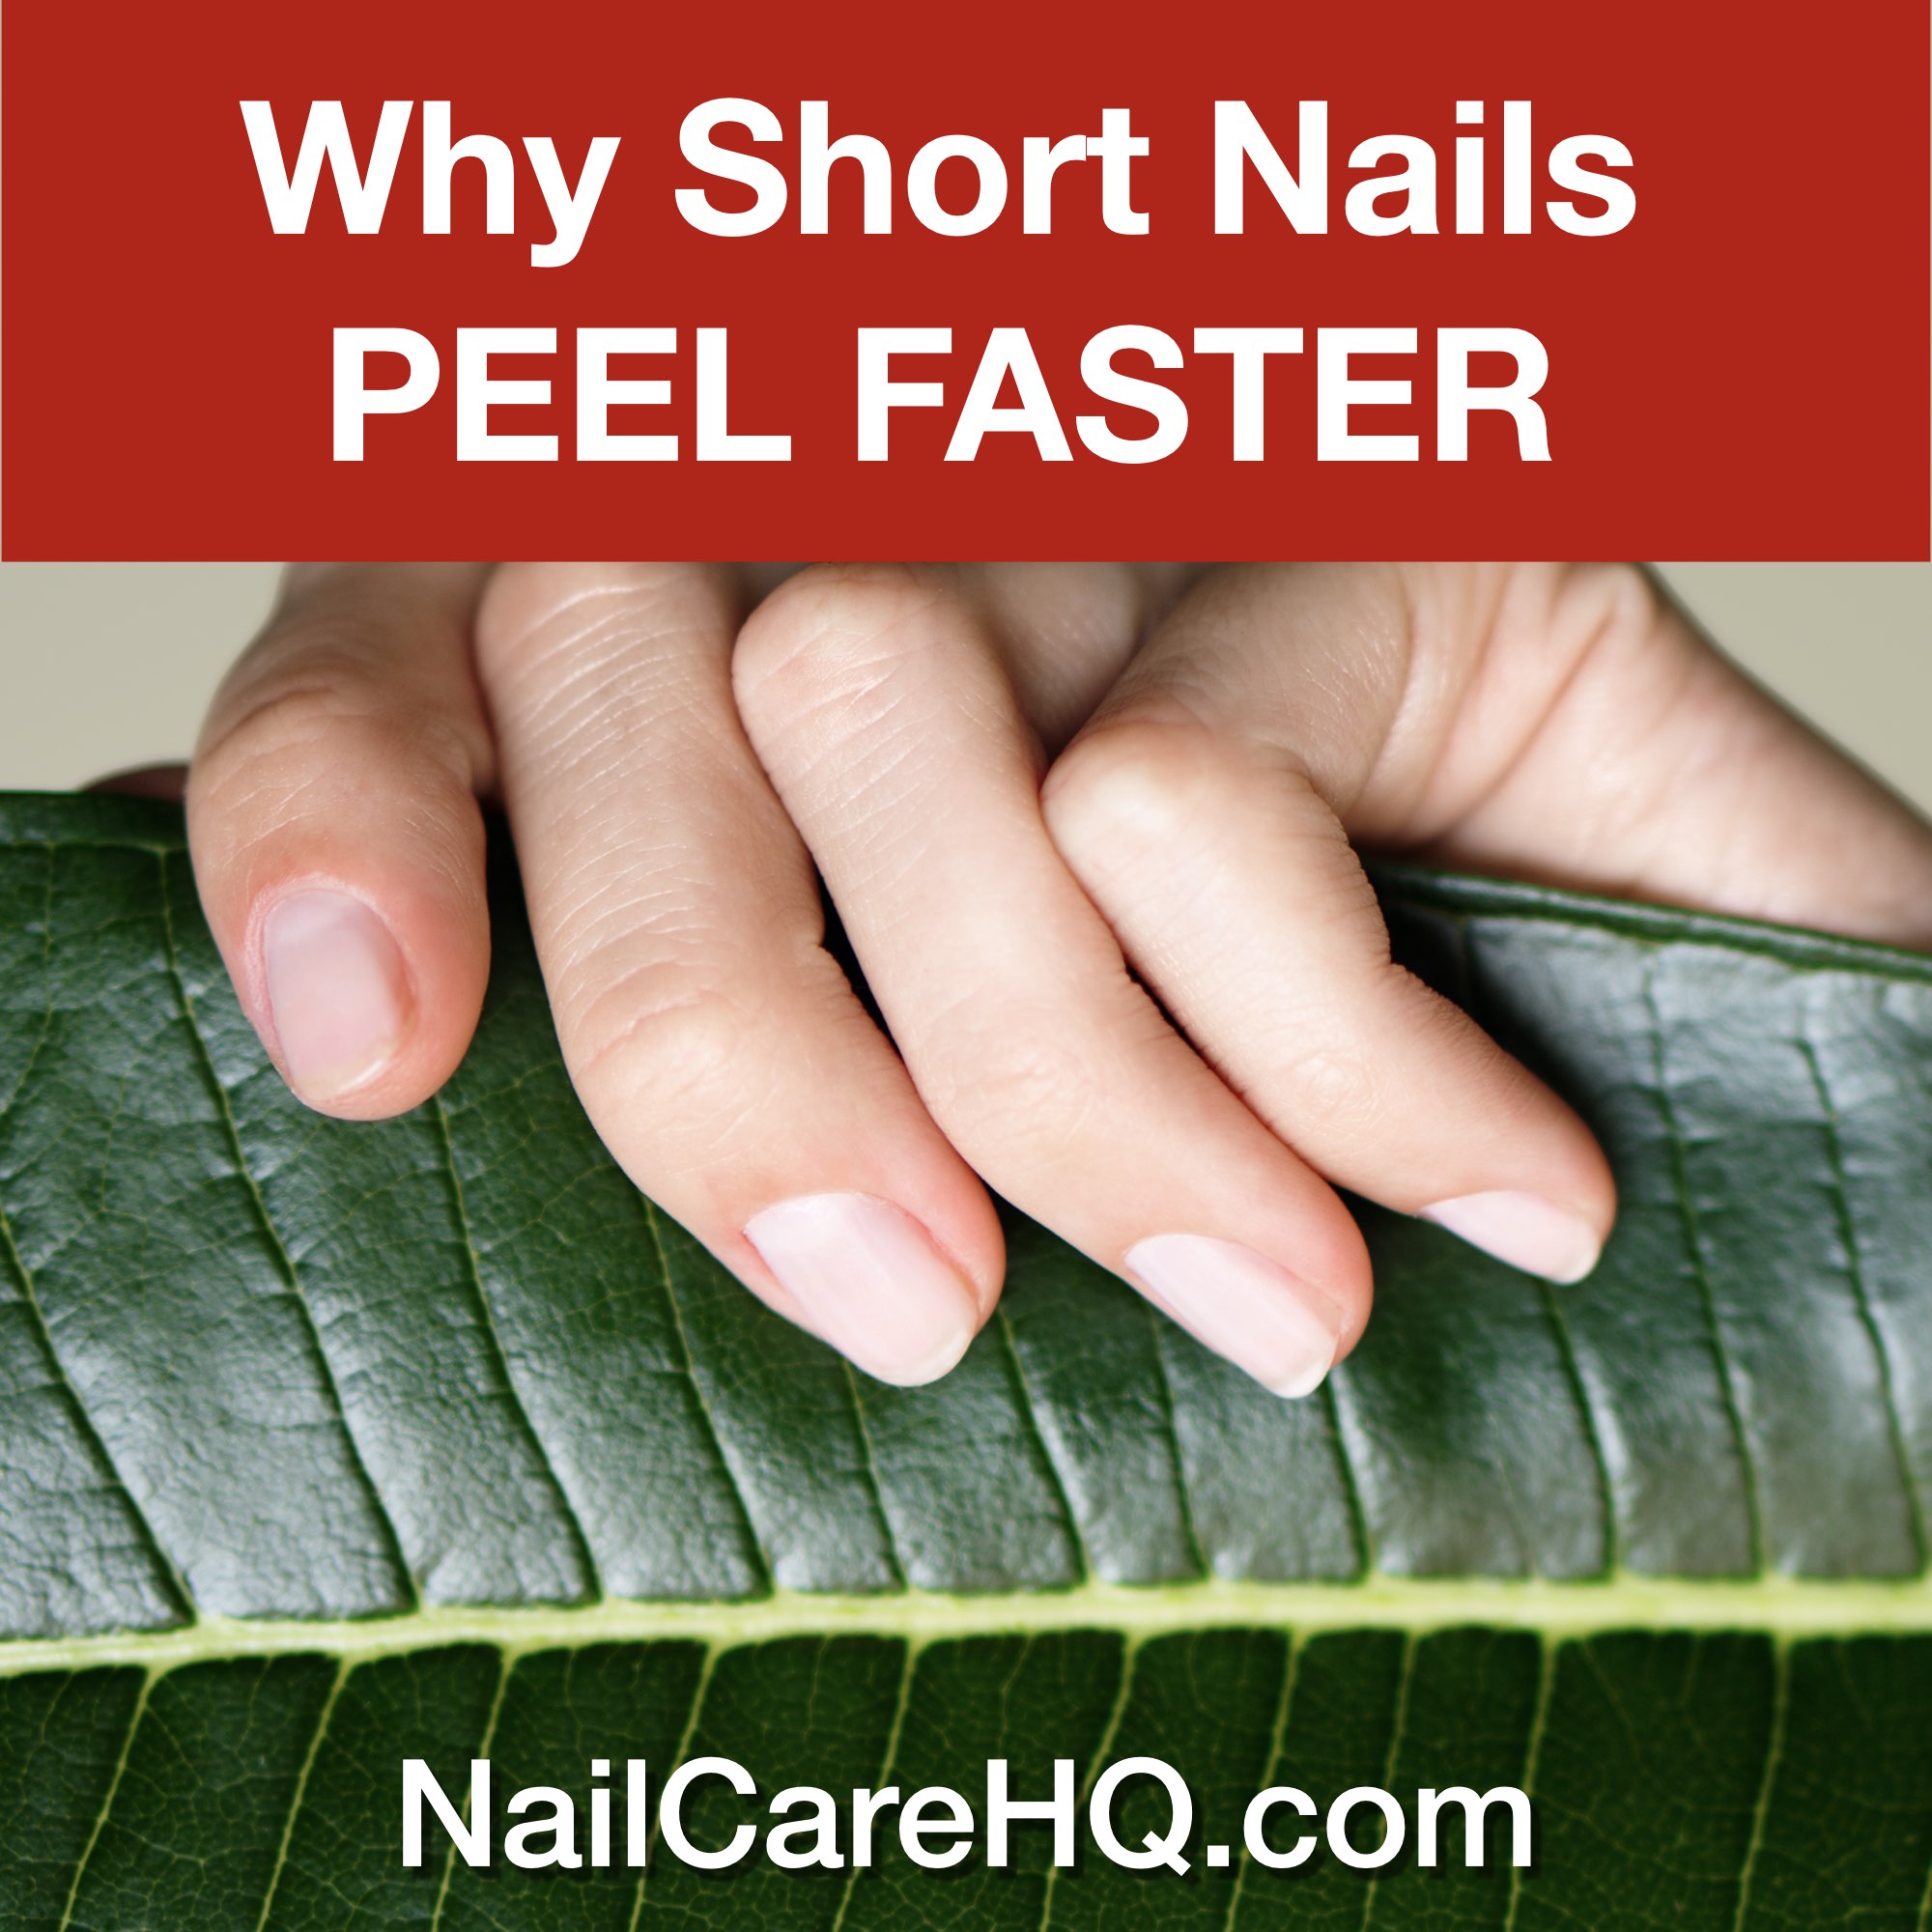 3 Reasons Why Short Nails Peel More